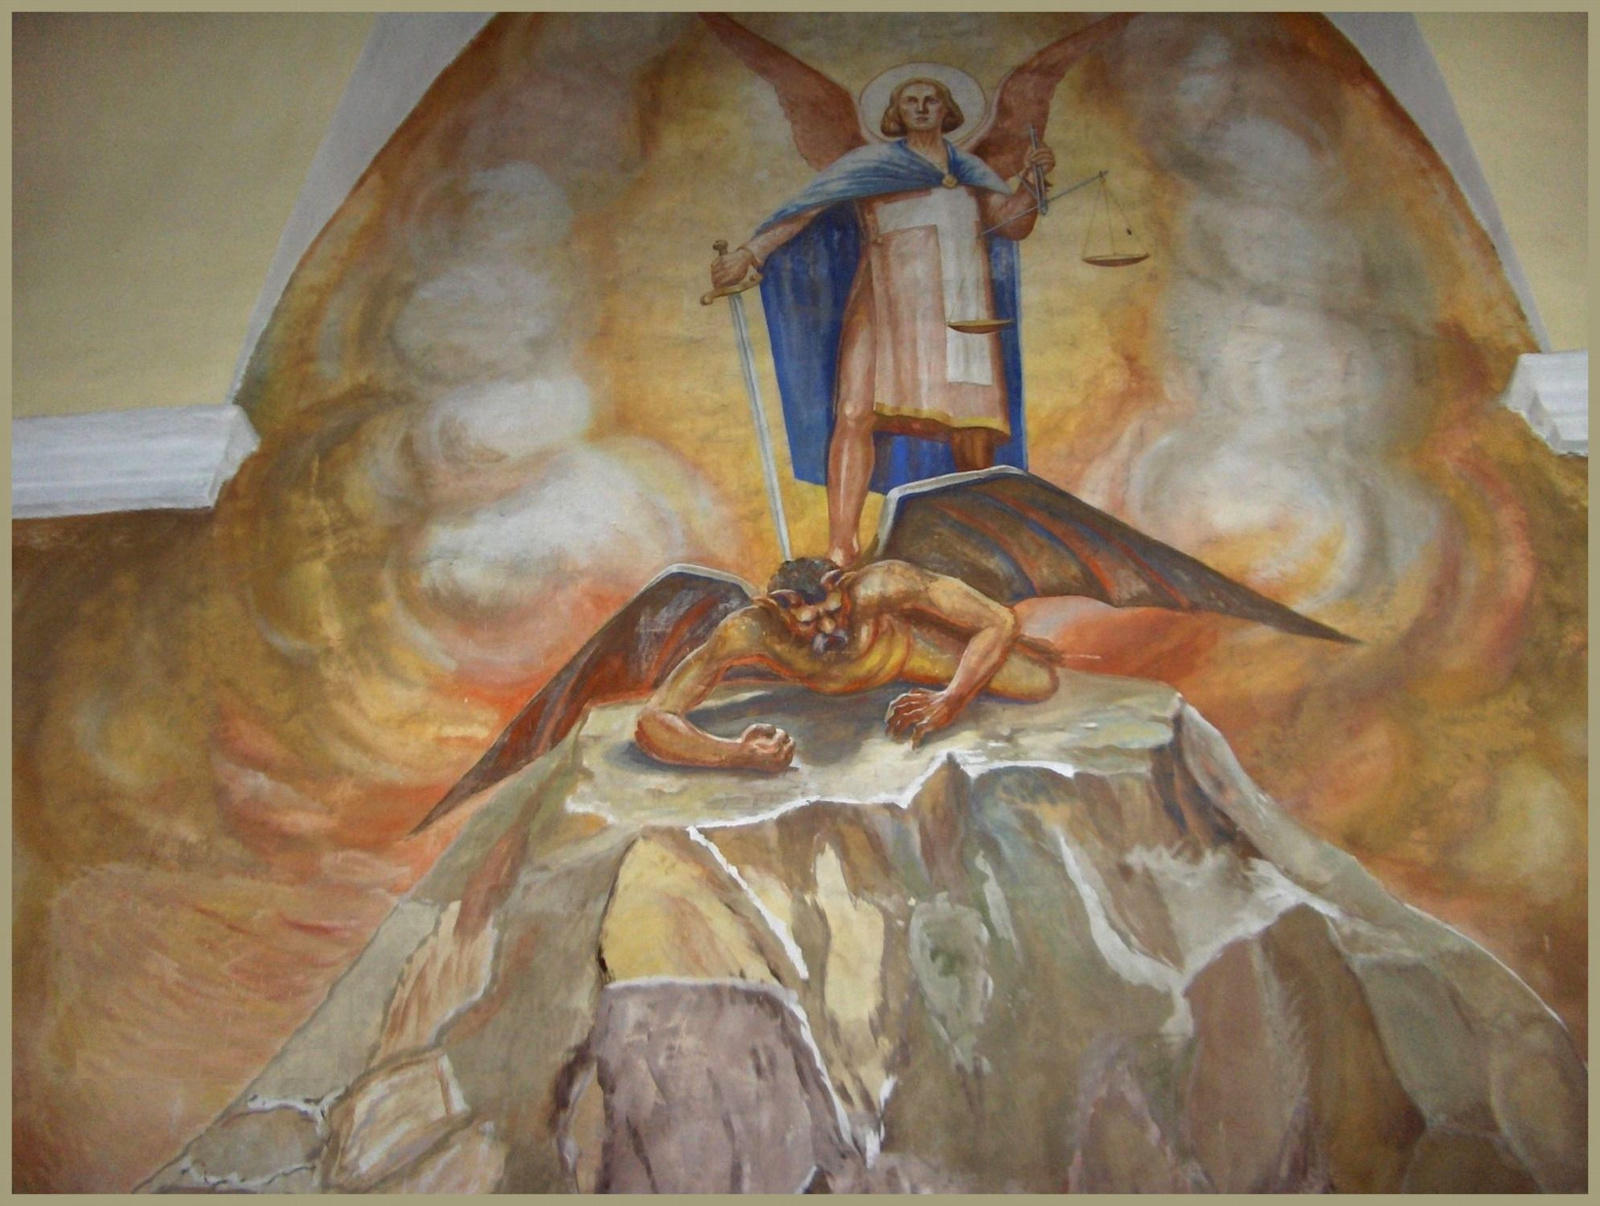 Sopronbánfalva - Karmelita templom freskója: a sátán Sztálin arc